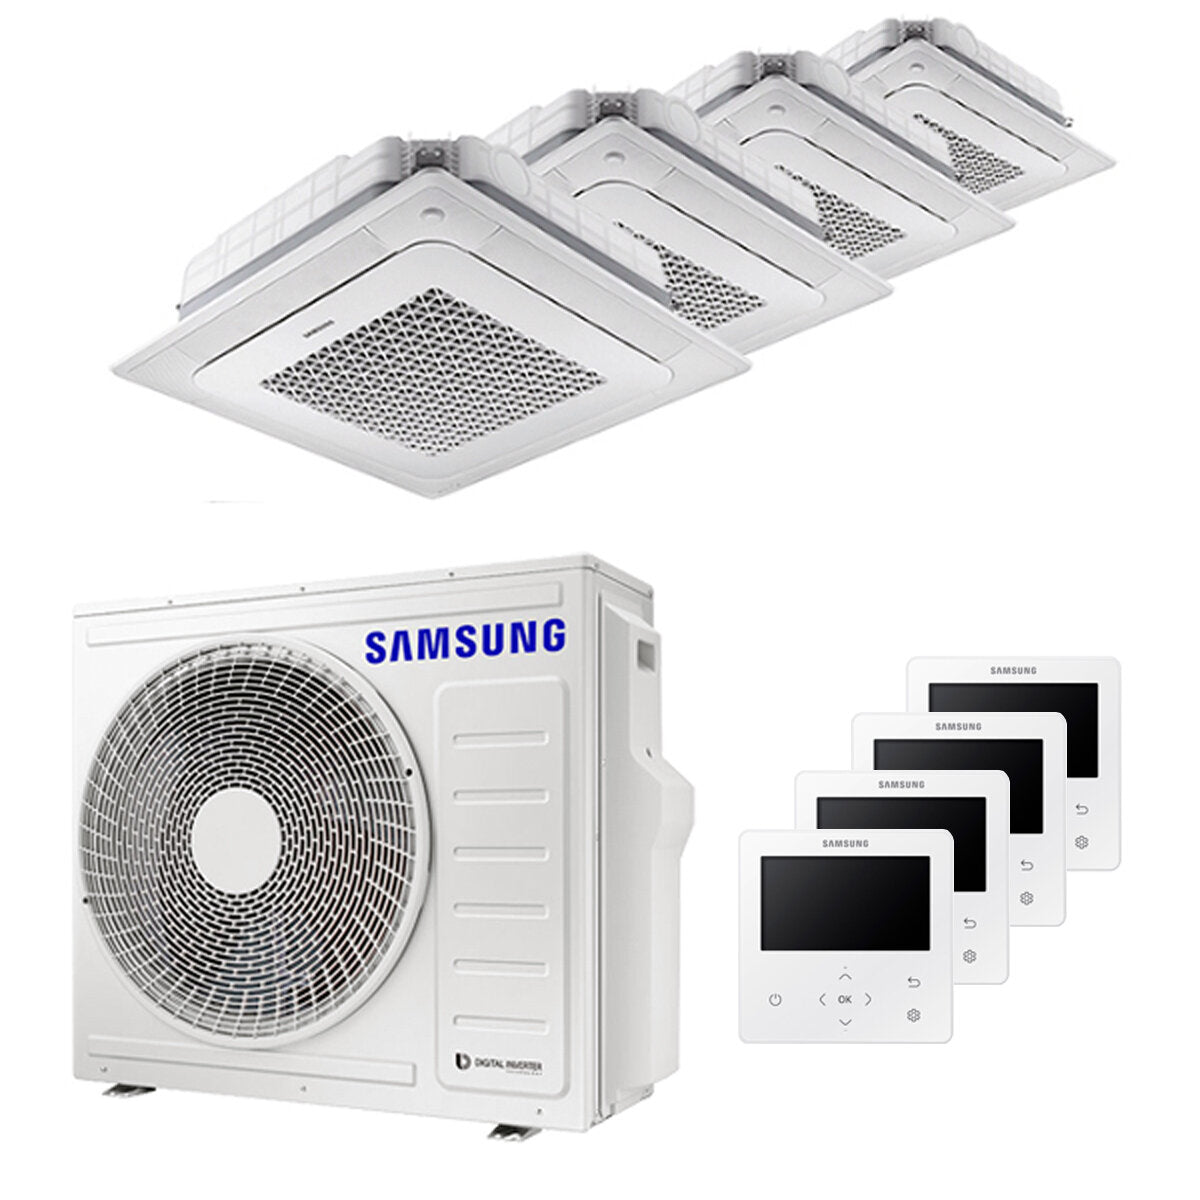 Samsung Climatiseur Windfree 4 voies split carré 7000 + 9000 + 9000 + 12000 BTU inverter A++ unité extérieure 8,0 kW